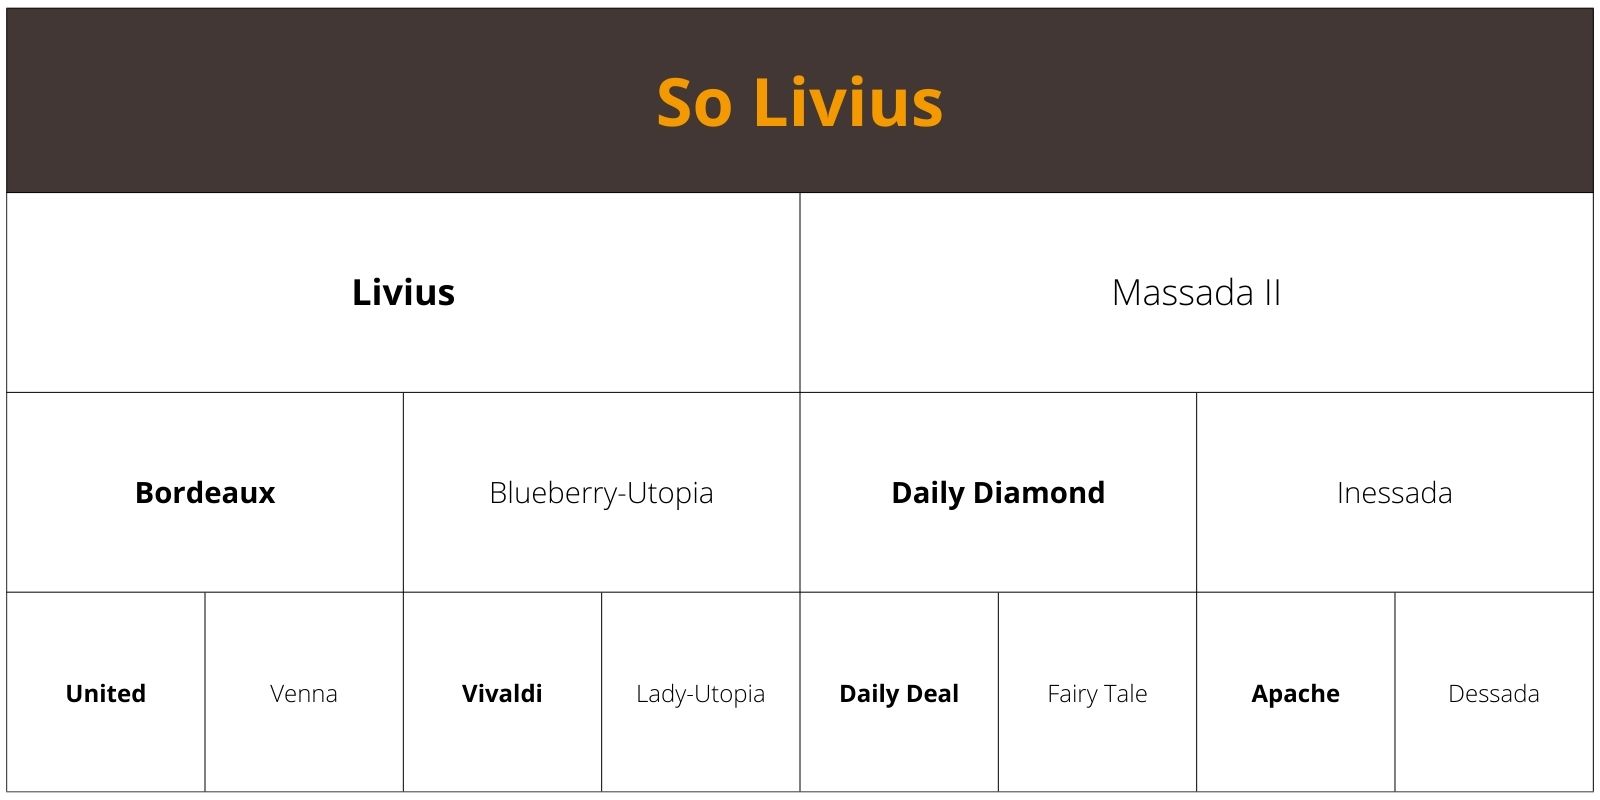 So Livius